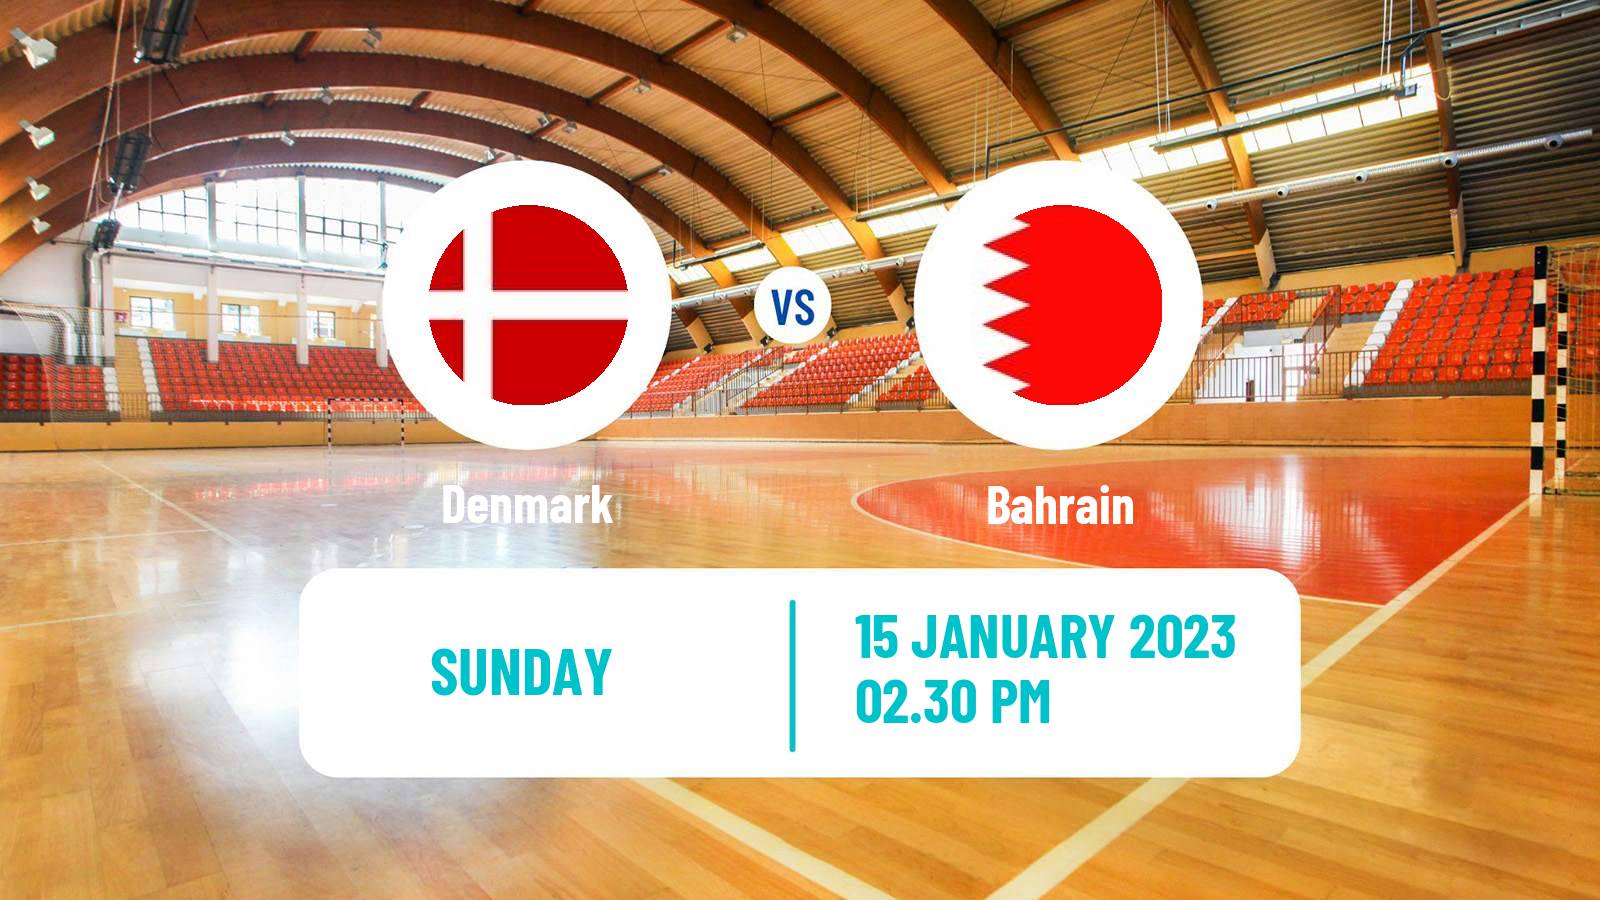 Handball Handball World Championship Denmark - Bahrain